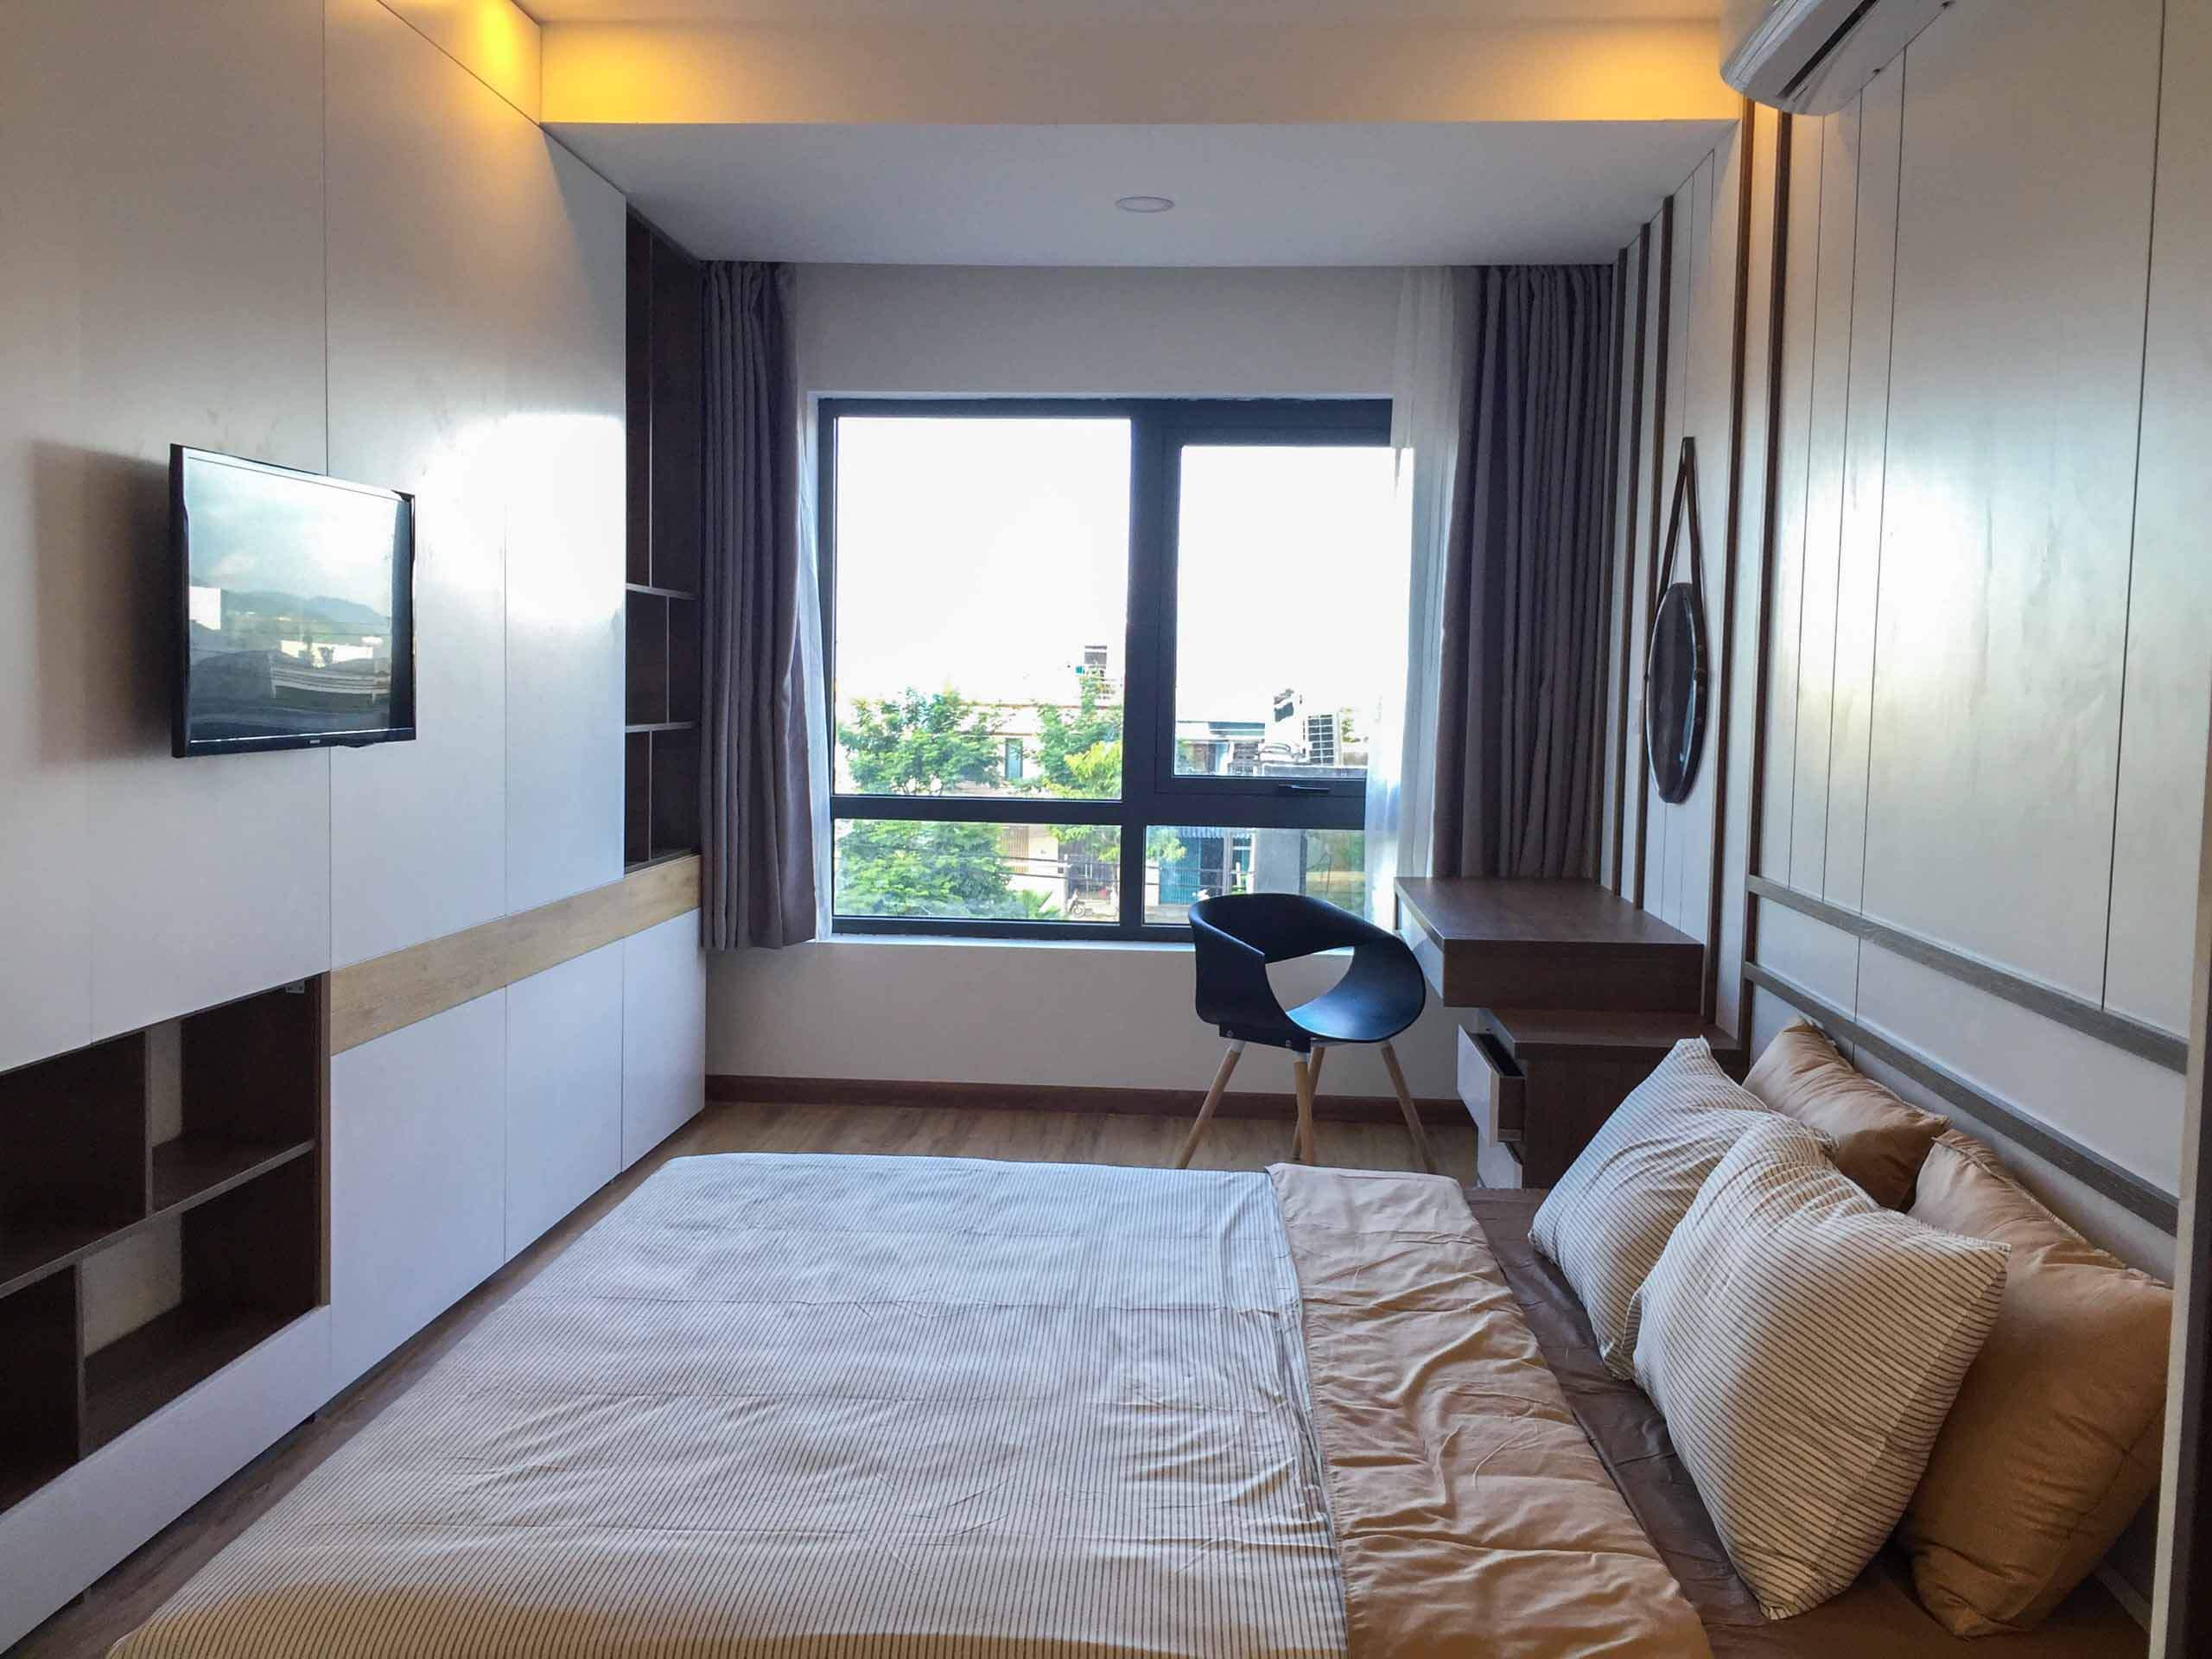 Hình ảnh phòng ngủ căn hộ mẫu dự án Sơn Trà Ocean View